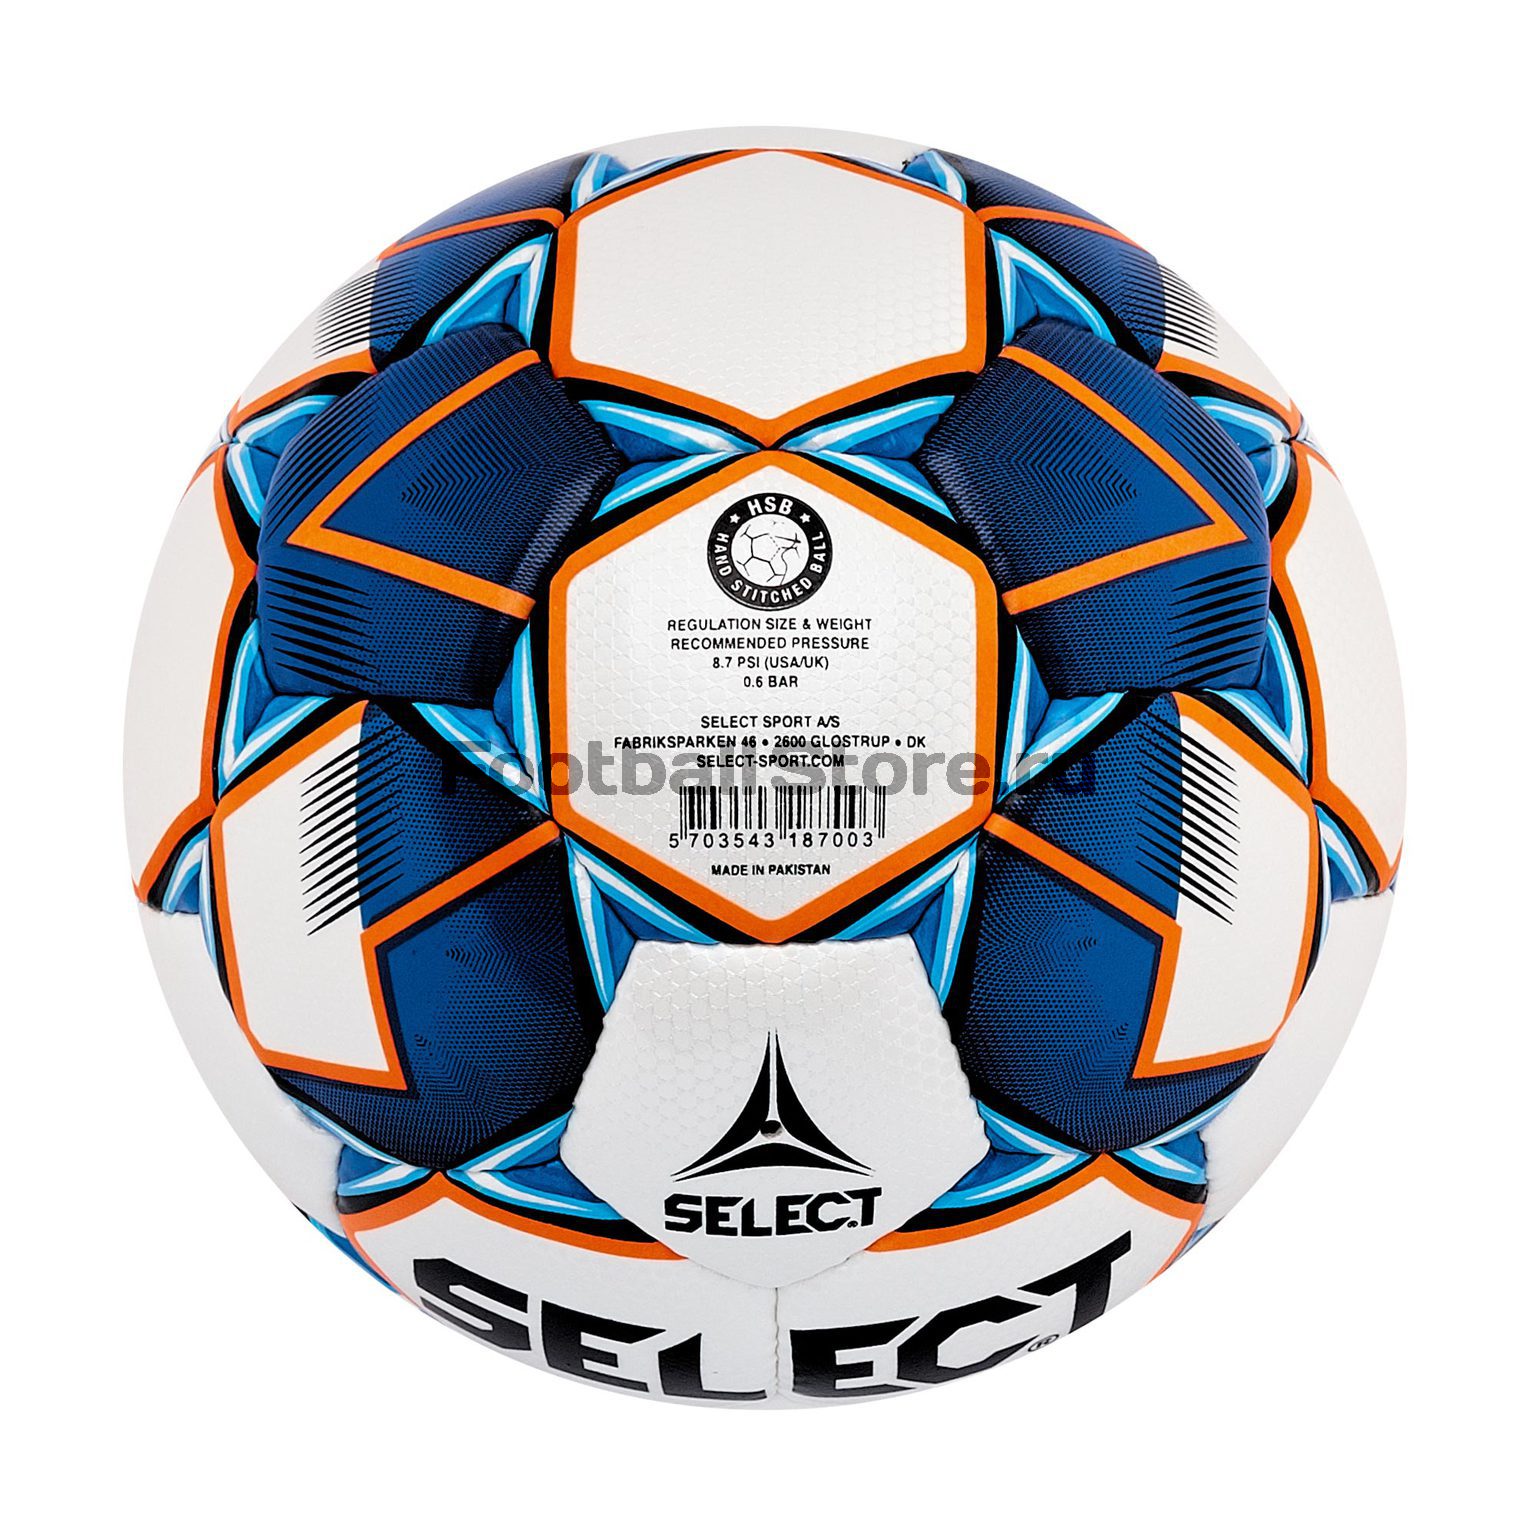 Футзальный мяч Select Futsal MIMAS 852608-003